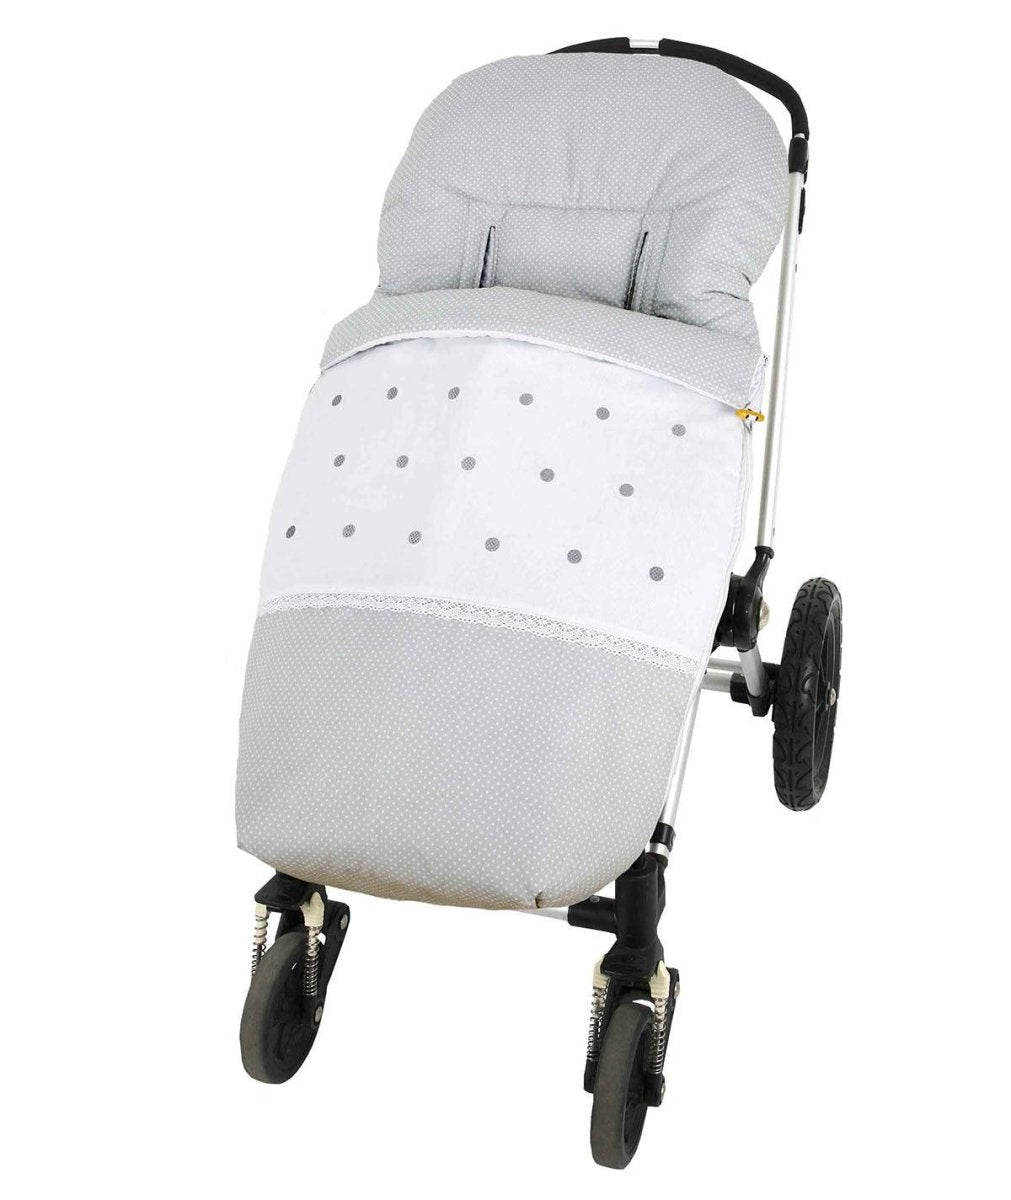 Sacos de bebé de capazo y silla. Los mejores complementos para carritos.  Envíos gratis. - Bebesacos